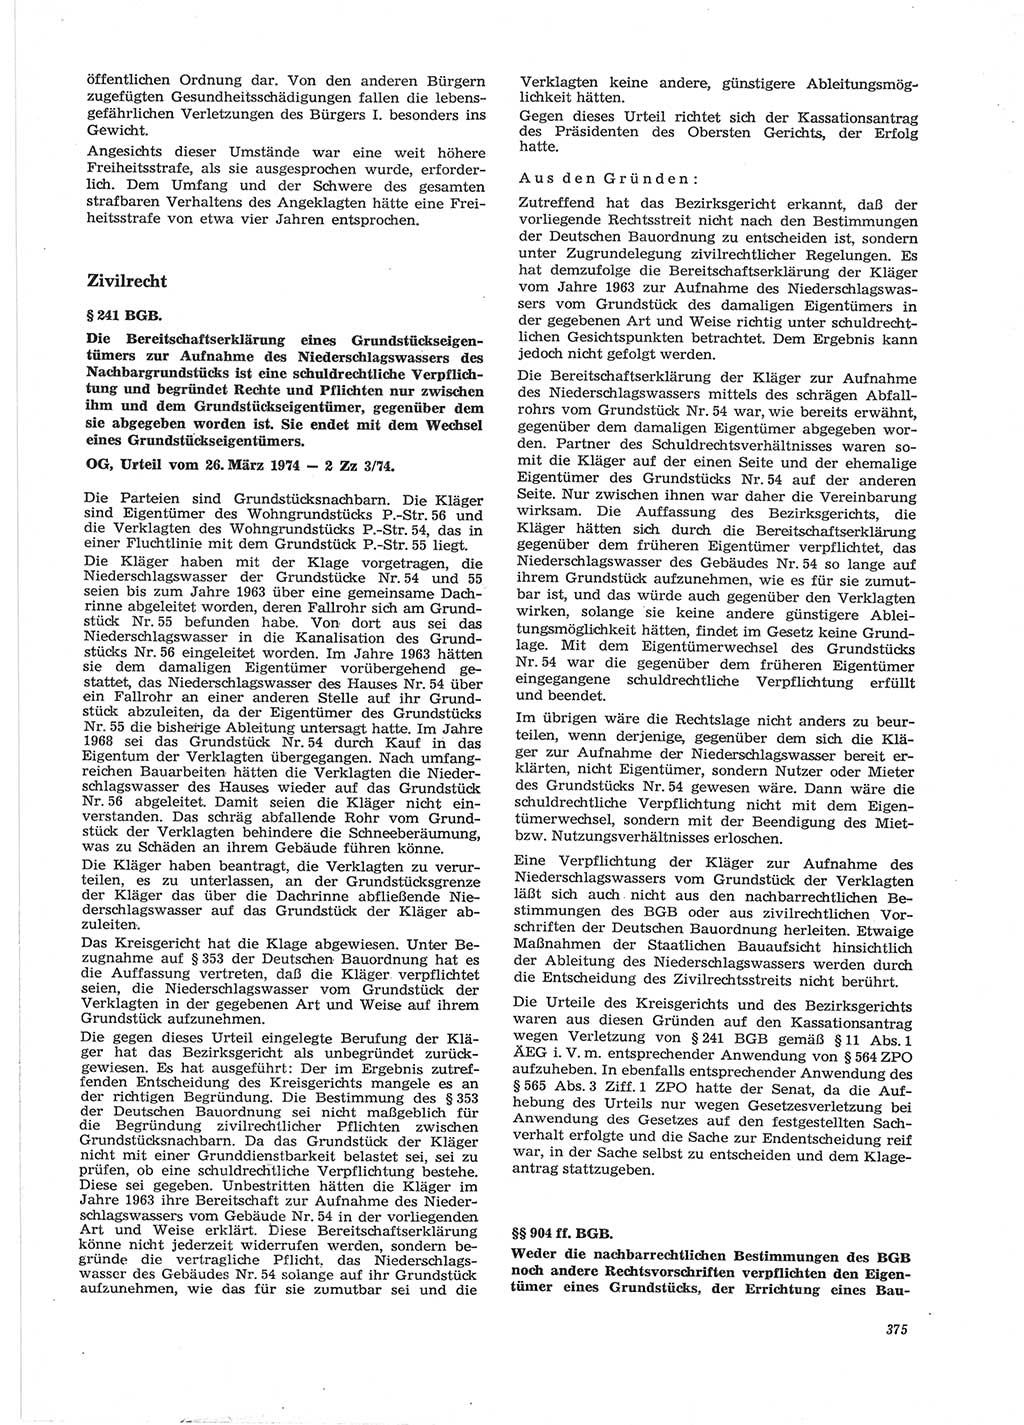 Neue Justiz (NJ), Zeitschrift für Recht und Rechtswissenschaft [Deutsche Demokratische Republik (DDR)], 28. Jahrgang 1974, Seite 375 (NJ DDR 1974, S. 375)